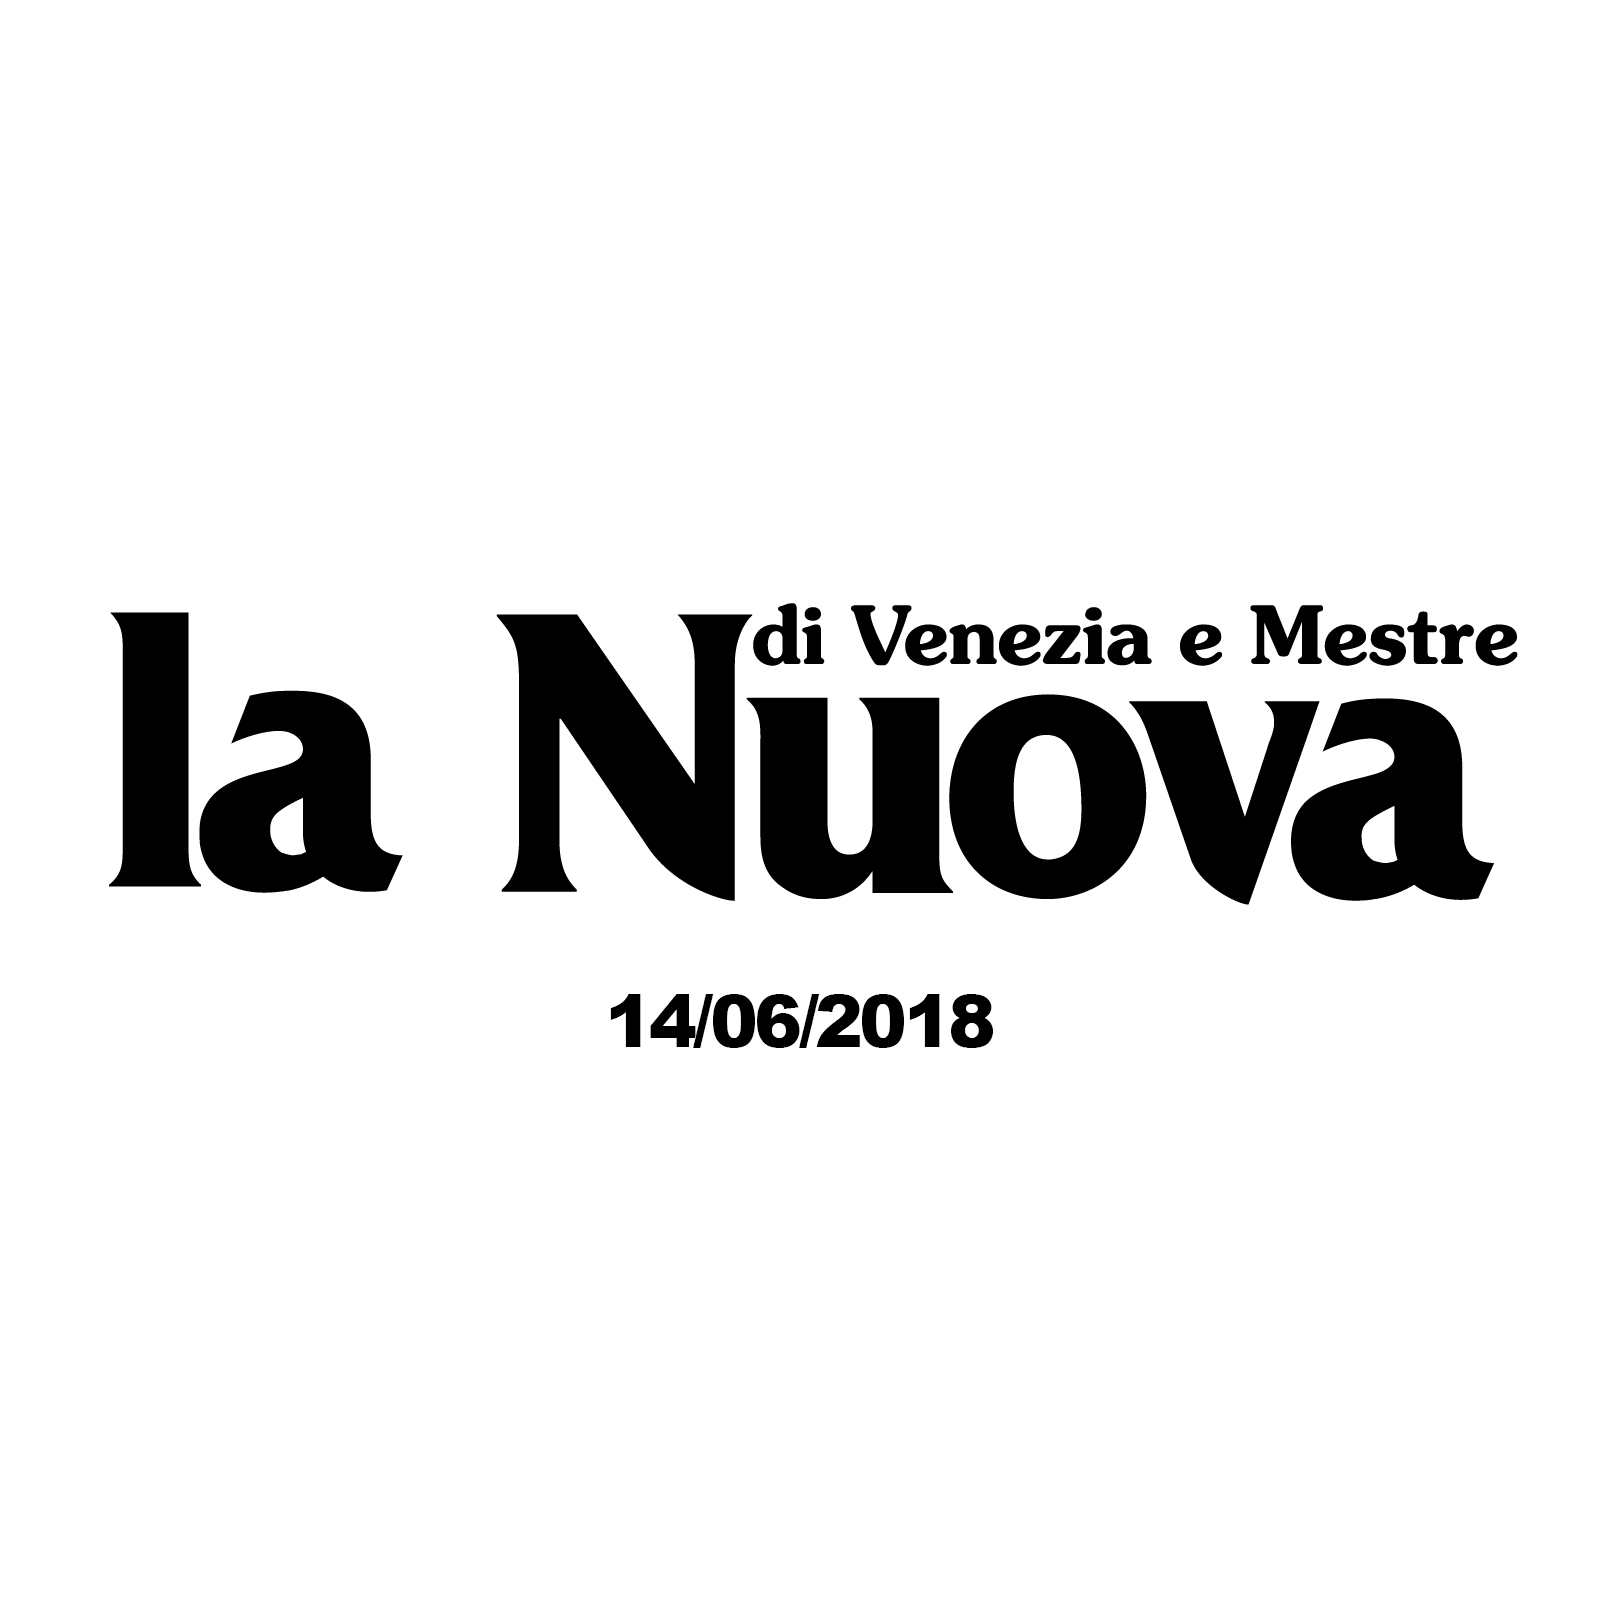 La “ NUOVA VENEZIA “ (14.06.2018)